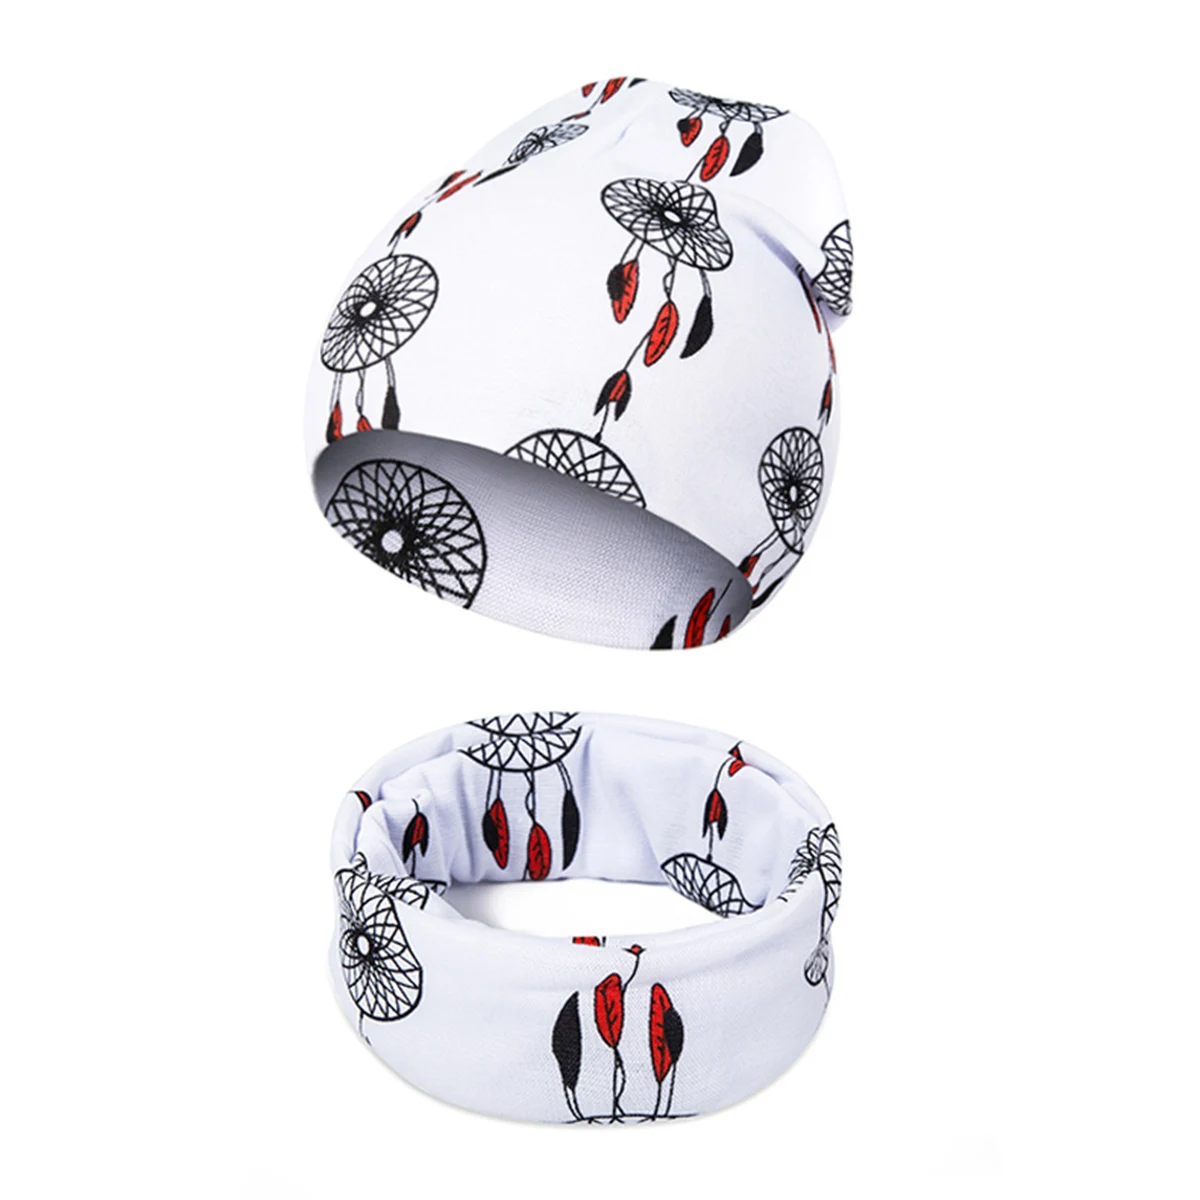 REAKIDS/модные детские вязаные шапочки с шарфом, хлопковая шапка с рисунком для мальчиков и девочек, зимние шапочки, детская шапка, теплый шарф унисекс - Color: money tree